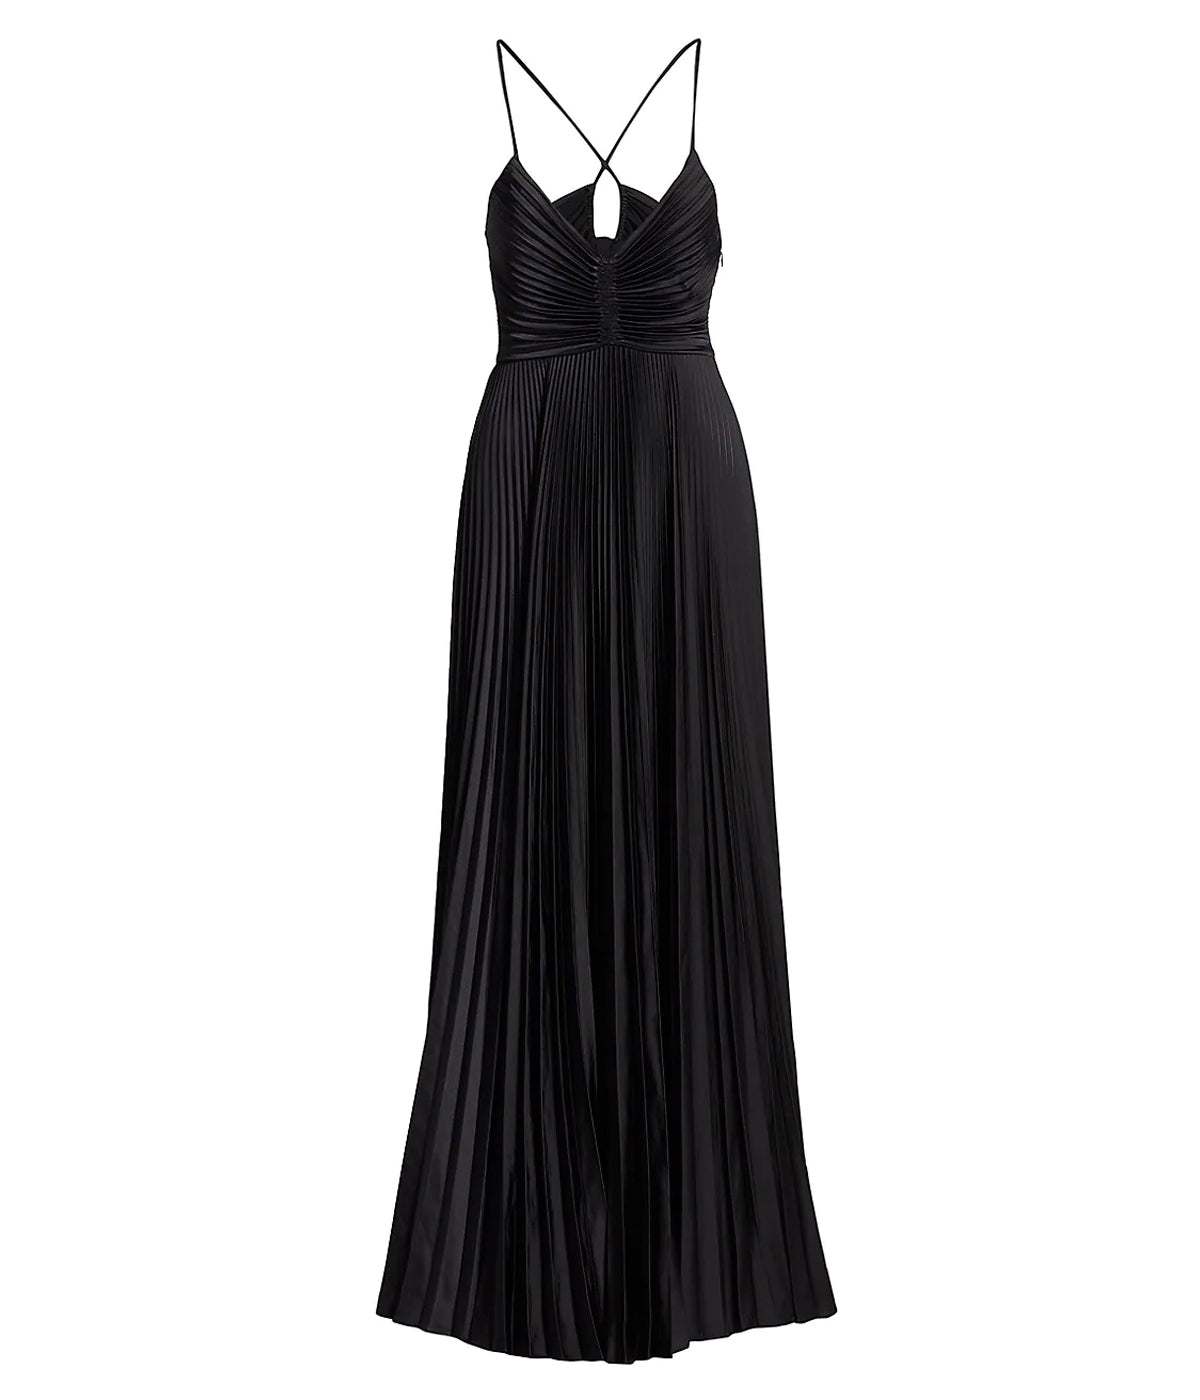 Aries Dress in Black